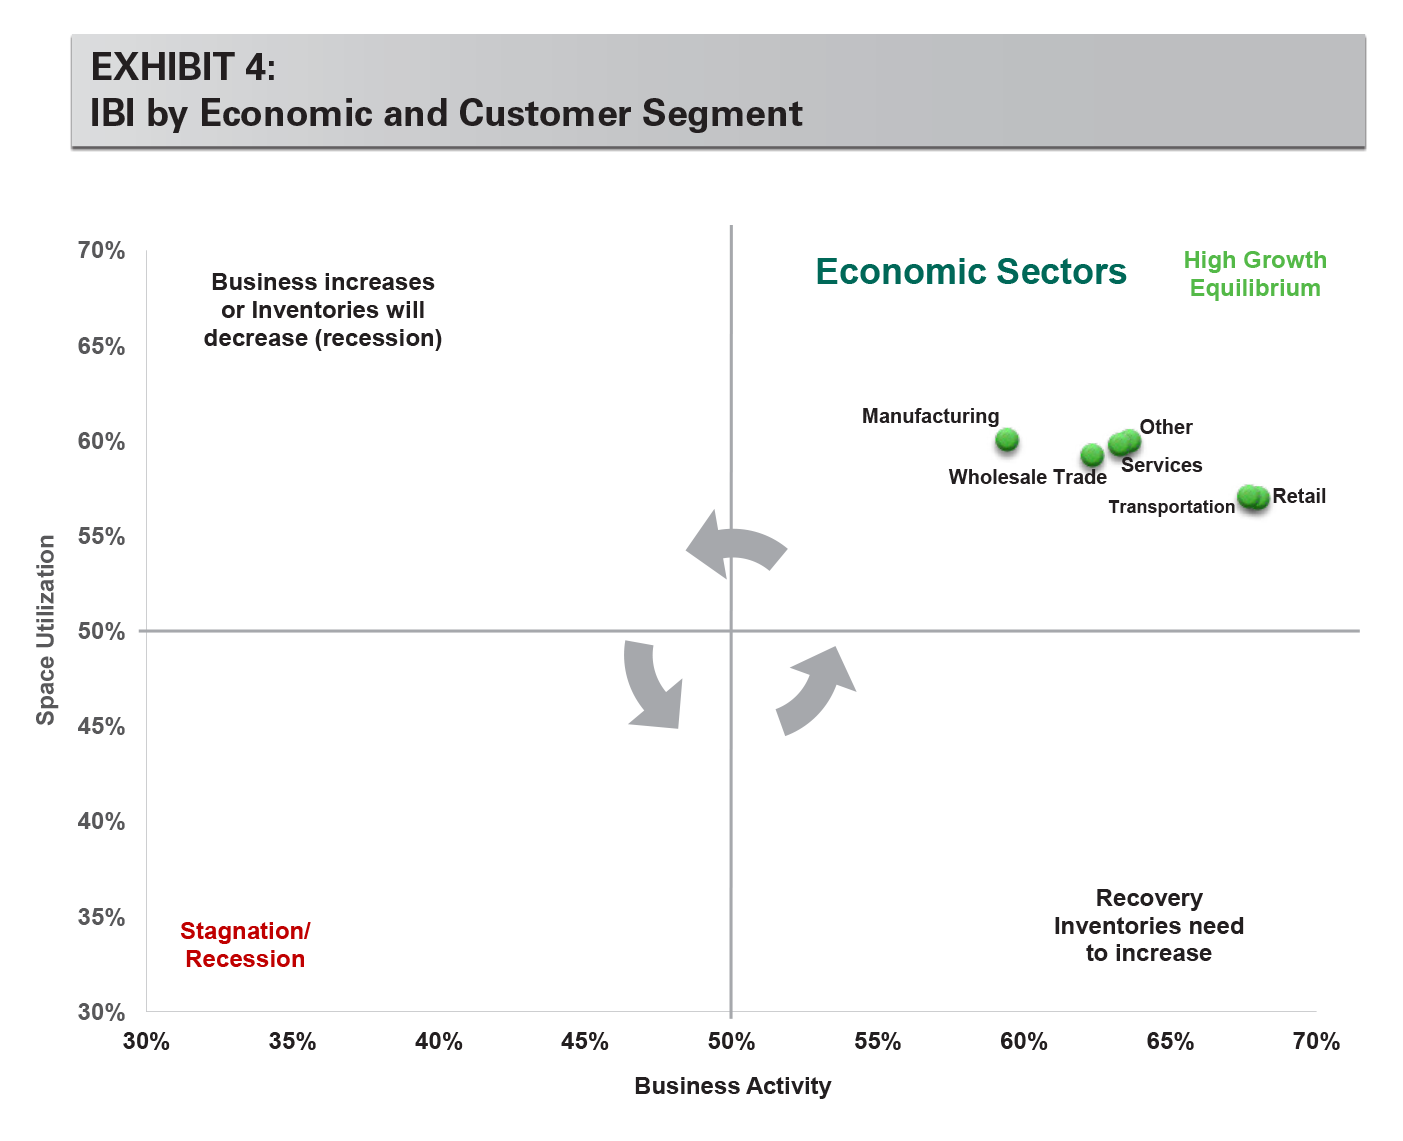 EXHIBIT 4: IBI by Economic and Customer Segment